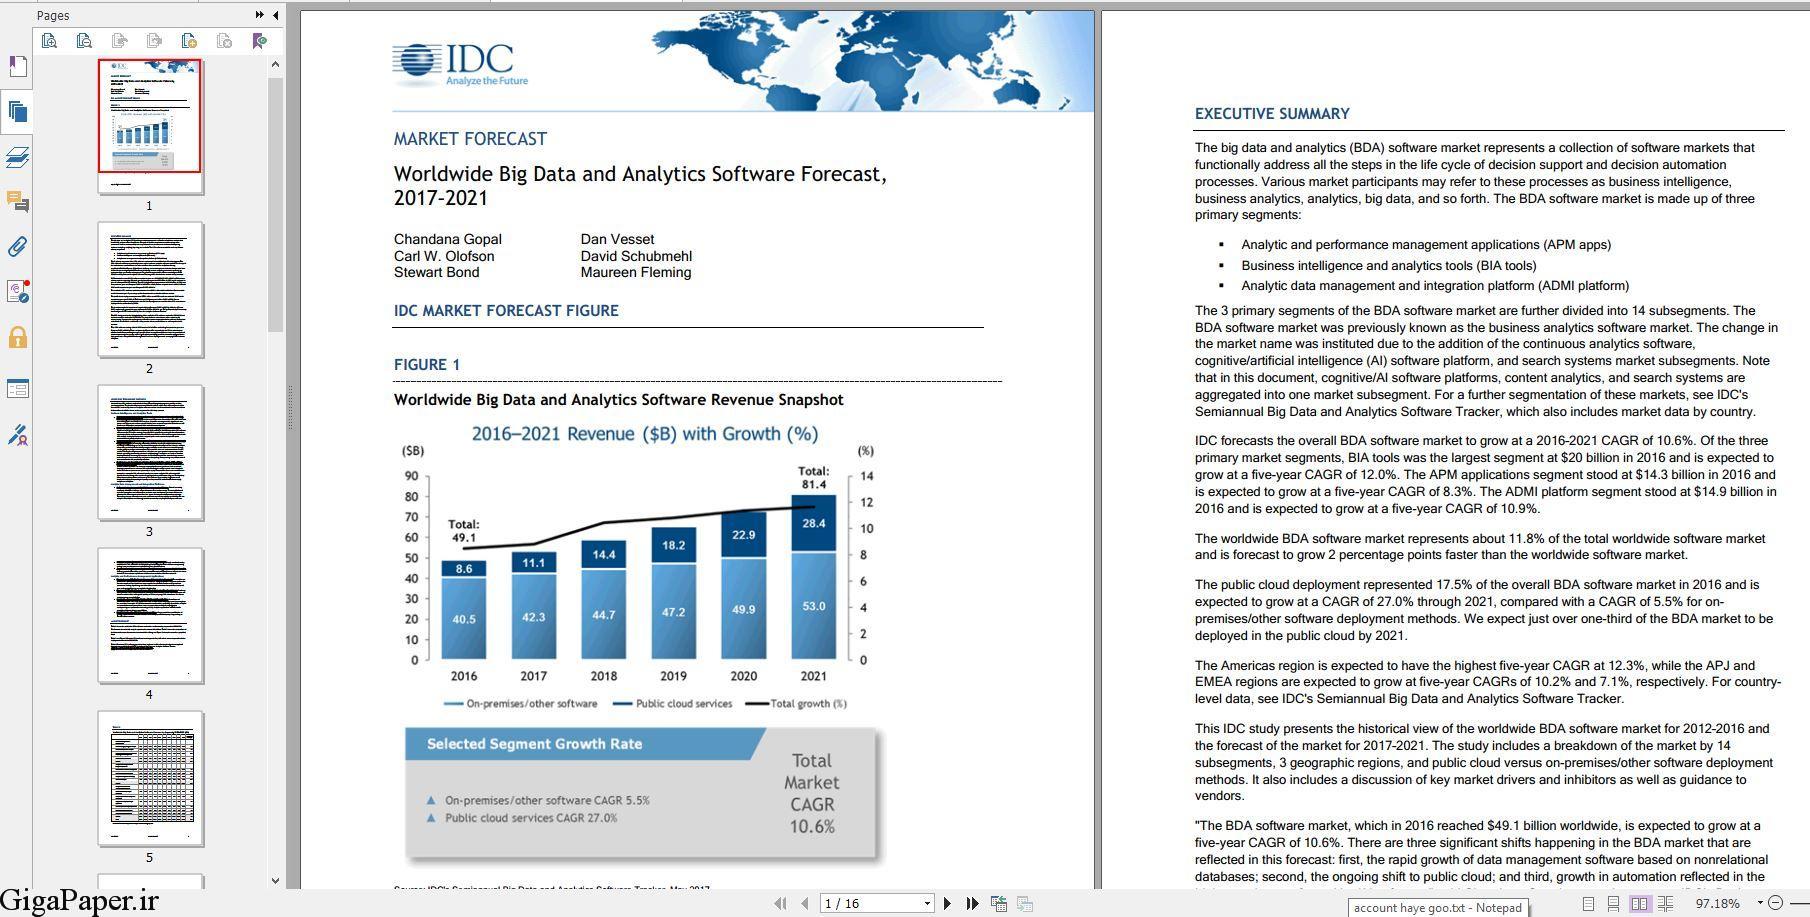  دانلود گزارش Worldwide Big Data and Analytics Software Forecast, 2018–2021 خرید گزارش IDC دانلود گزارش IDC.com تهیه جديدترين گزارشهای IDC